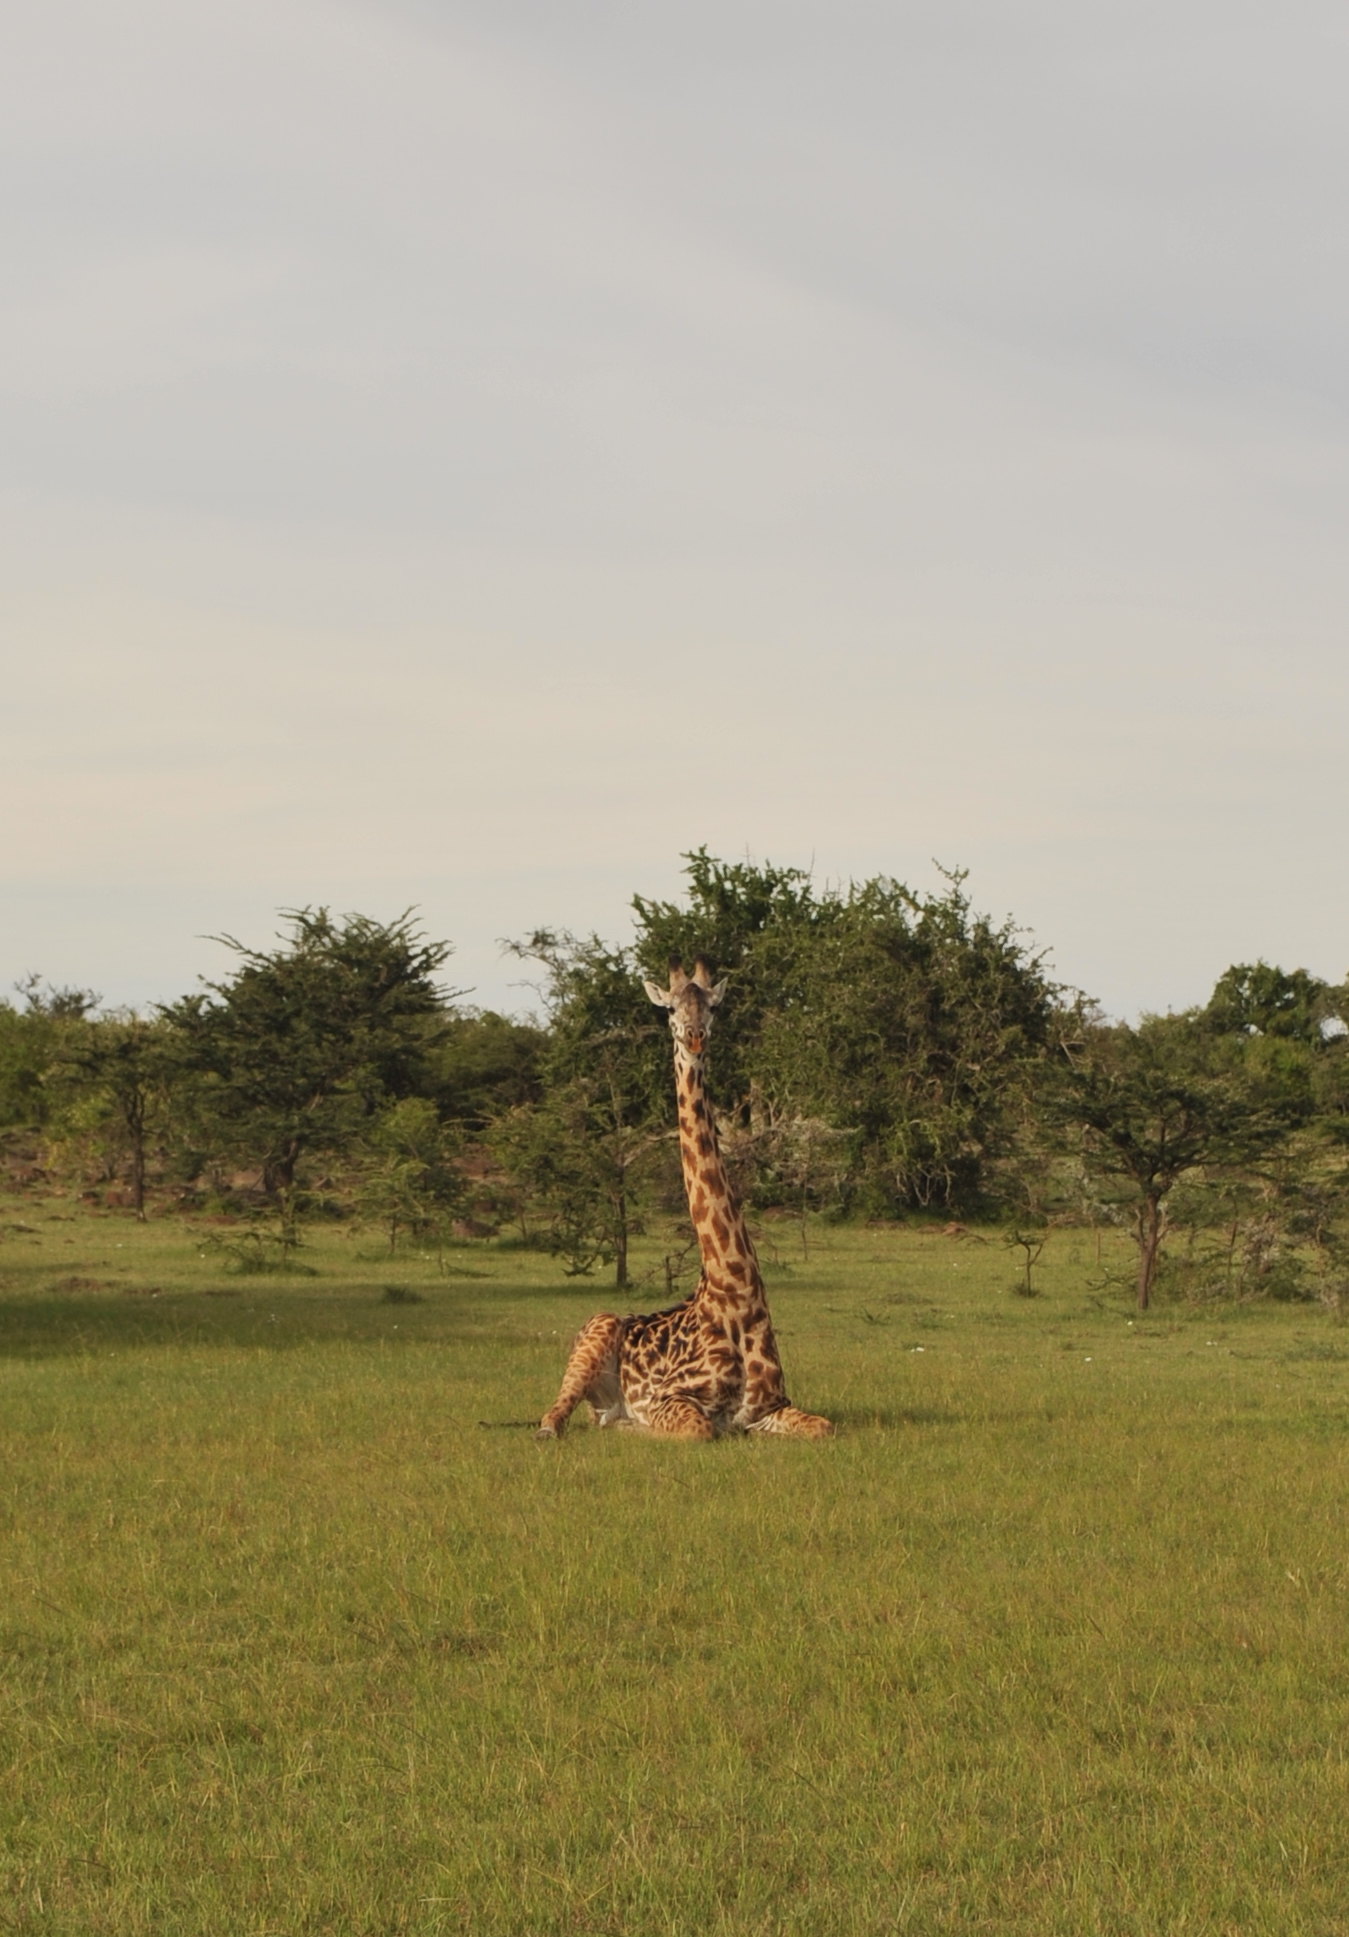 Masai-giraffe-Anton-Crone